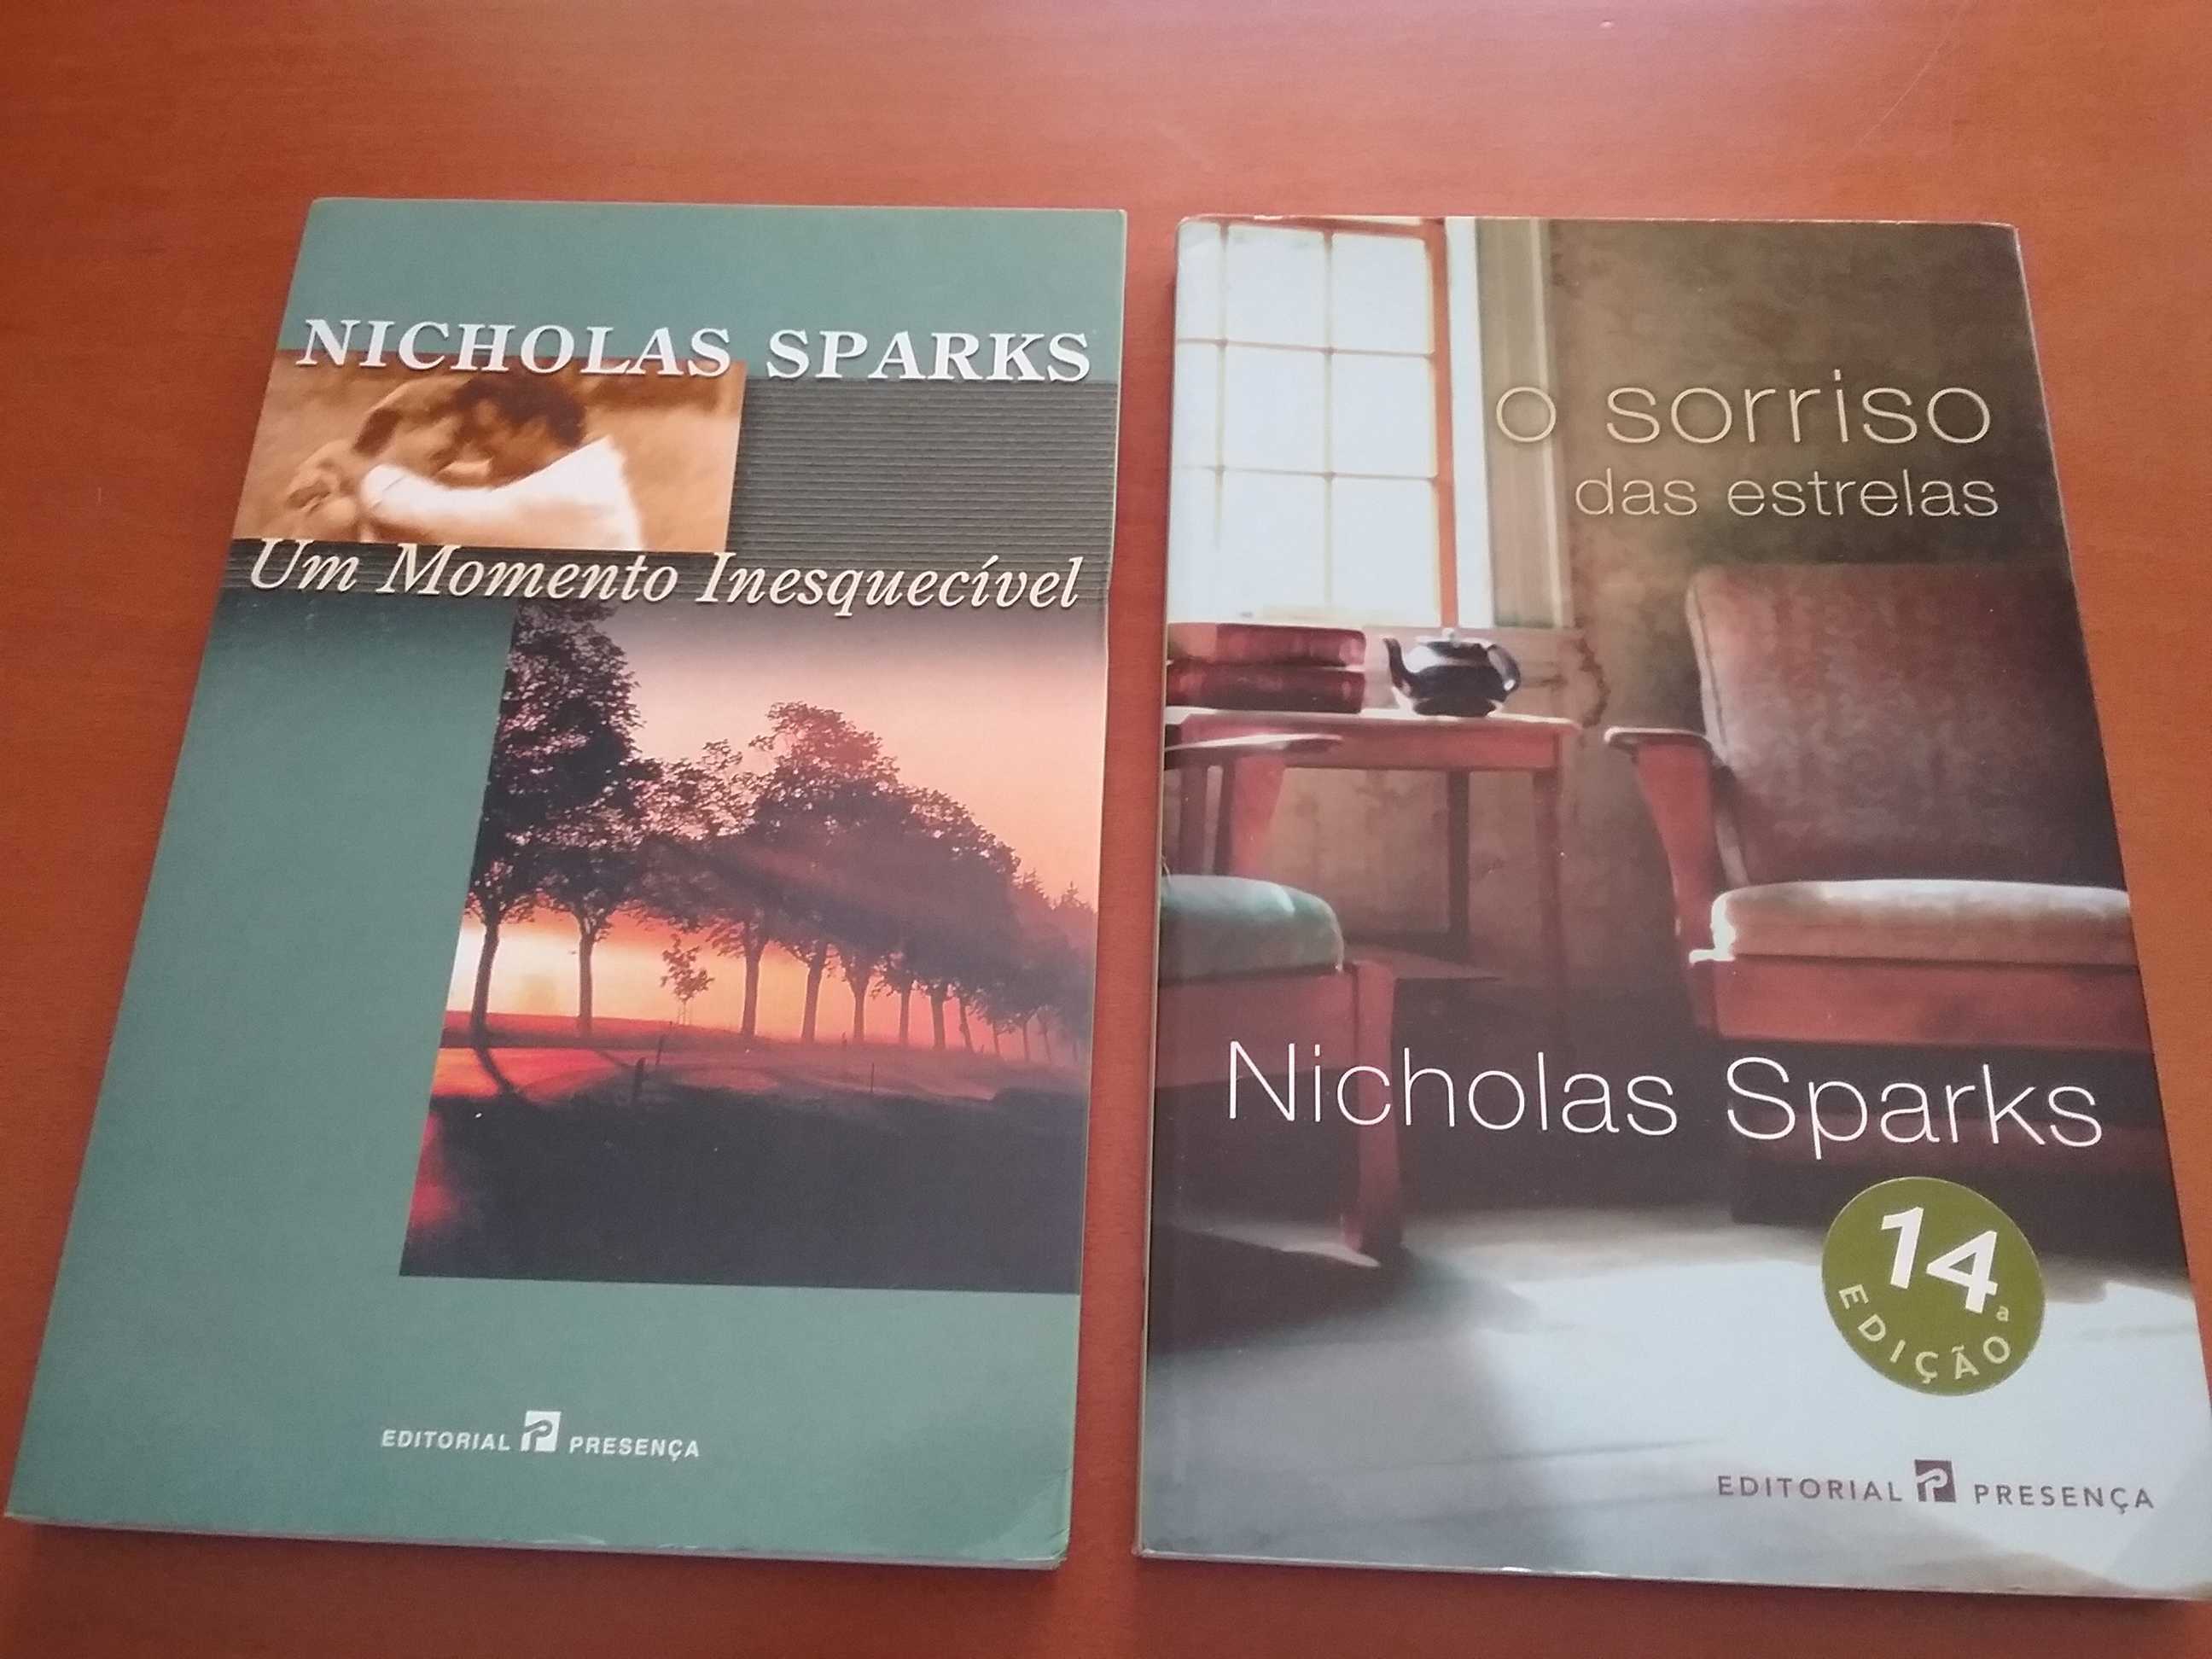 Nicholas Sparks e outros livros